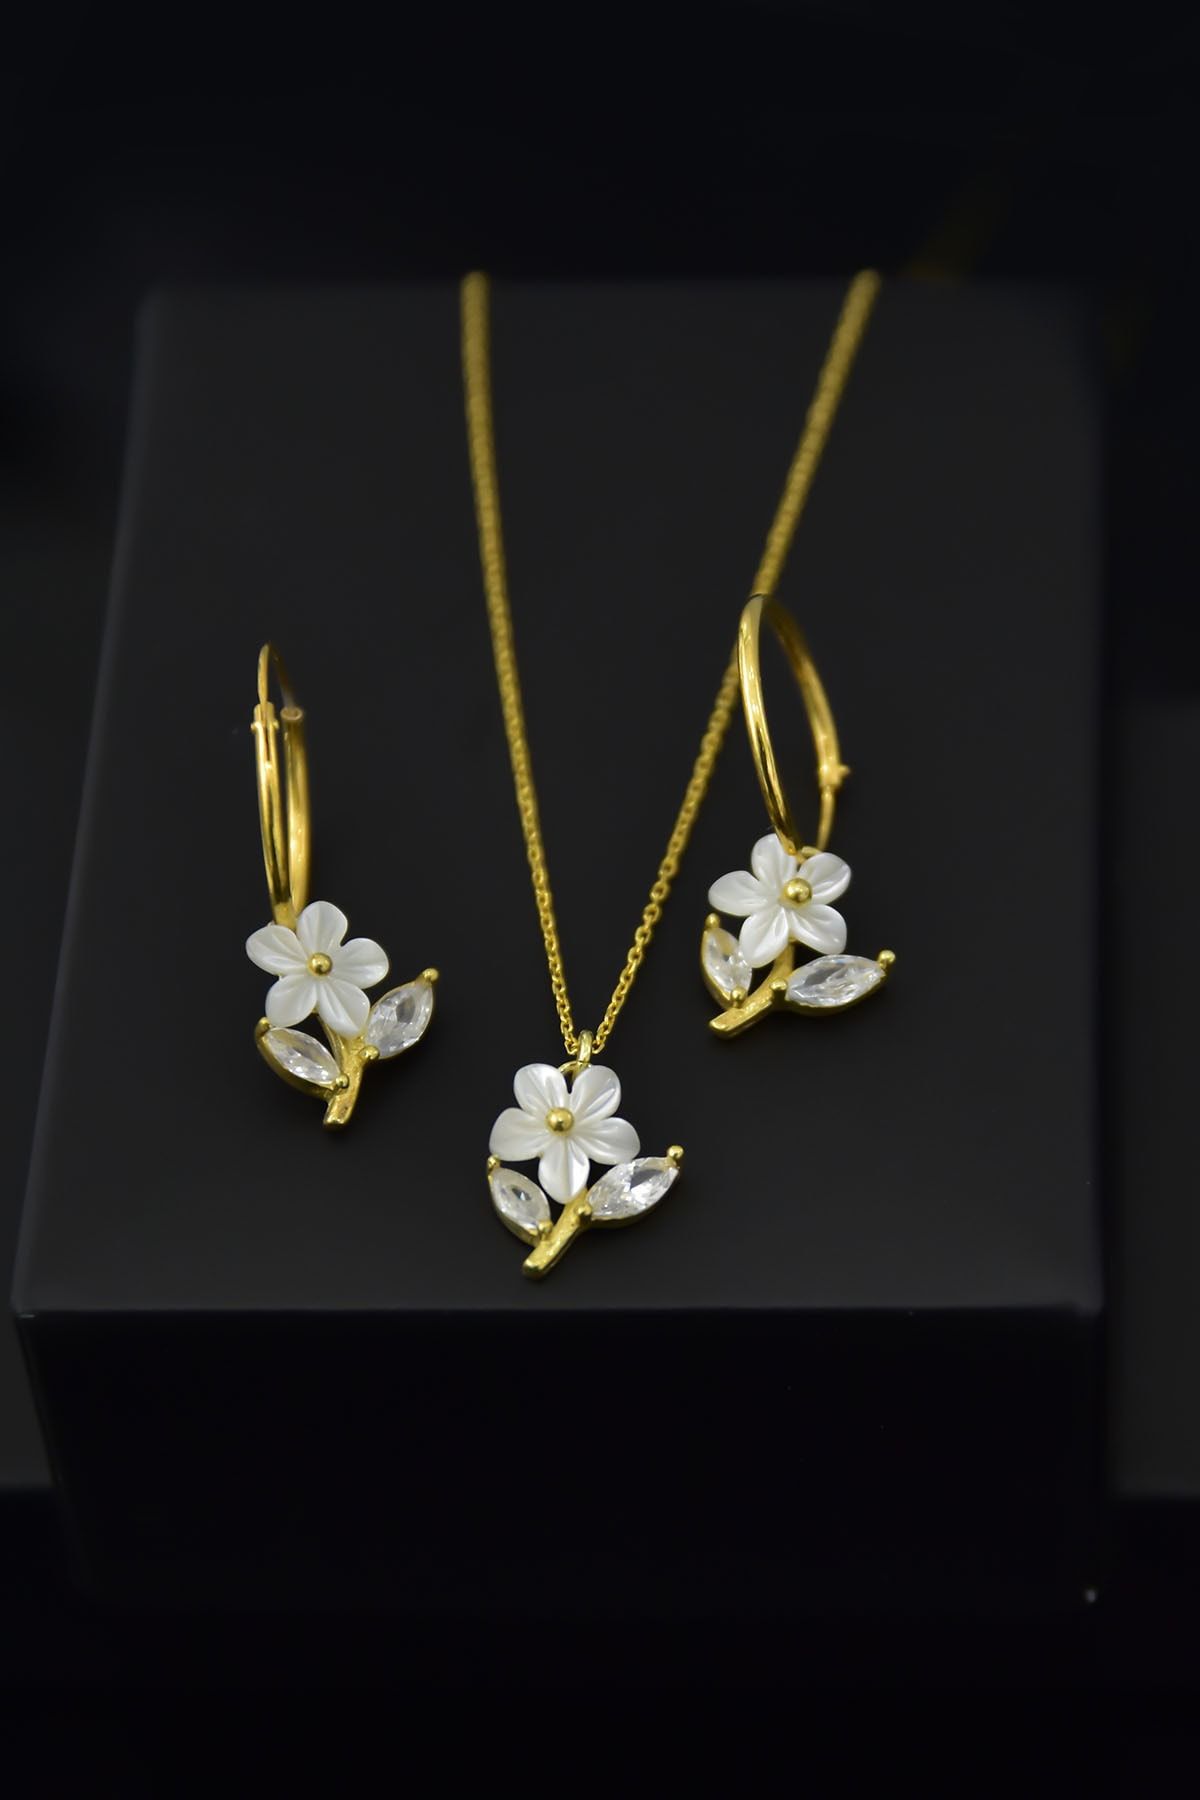 Papatya Silver 925 Ayar Gümüş Altın Kaplama Manolya Çiçeği Kolye Küpe Set